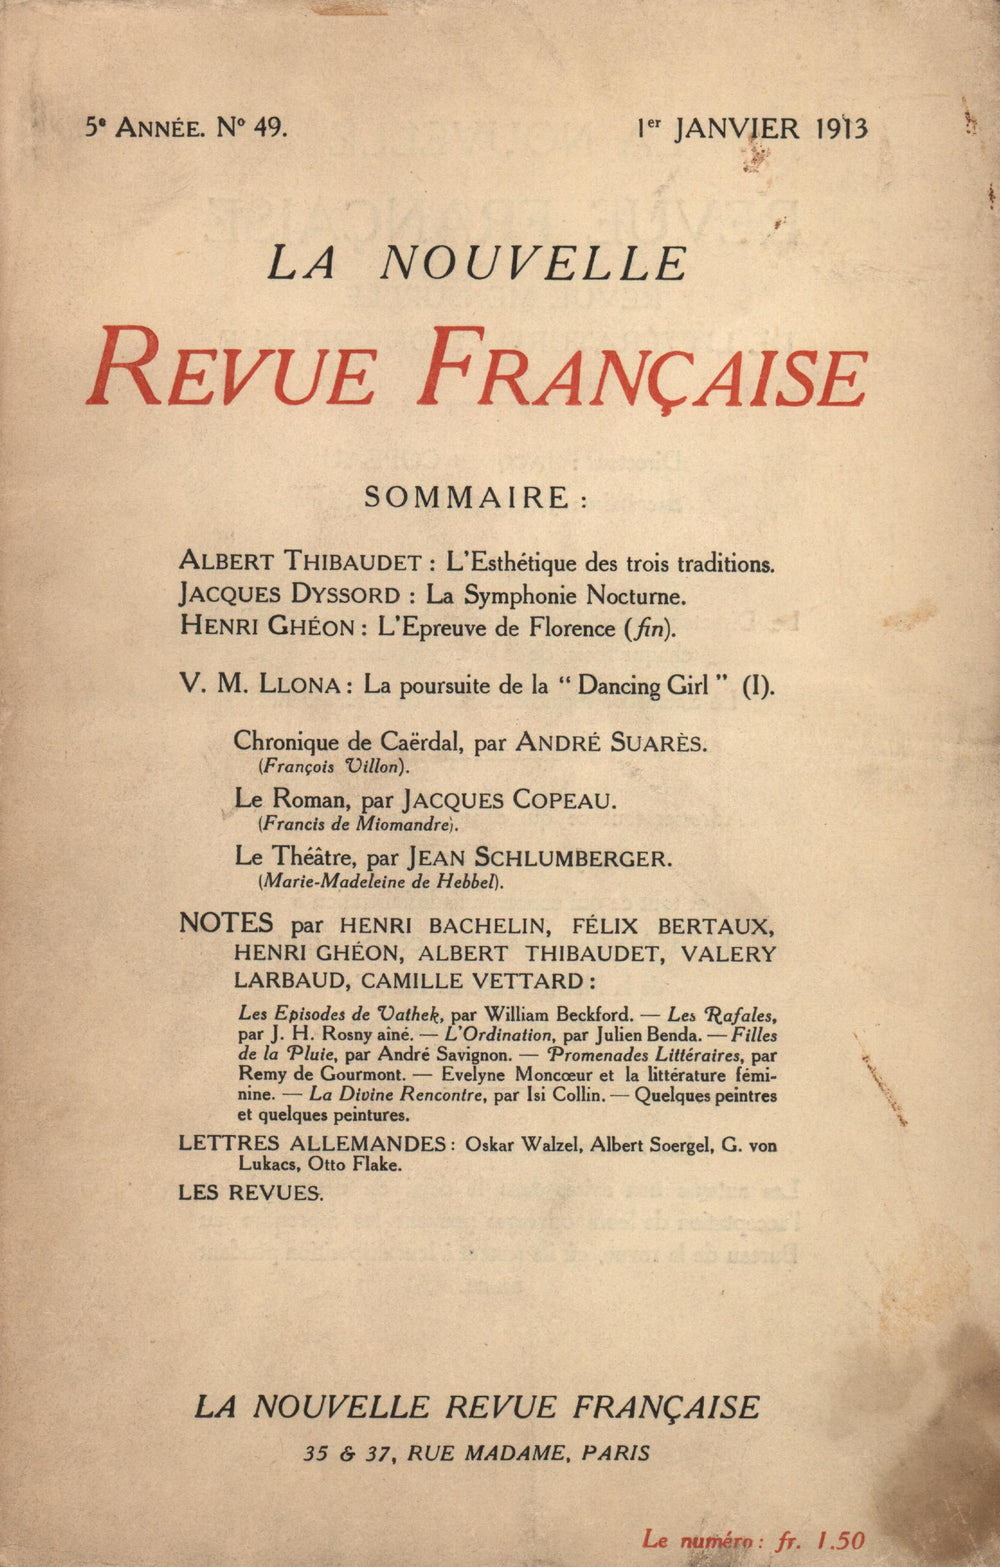 La Nouvelle Revue Française N' 49 (Janvier 1913)